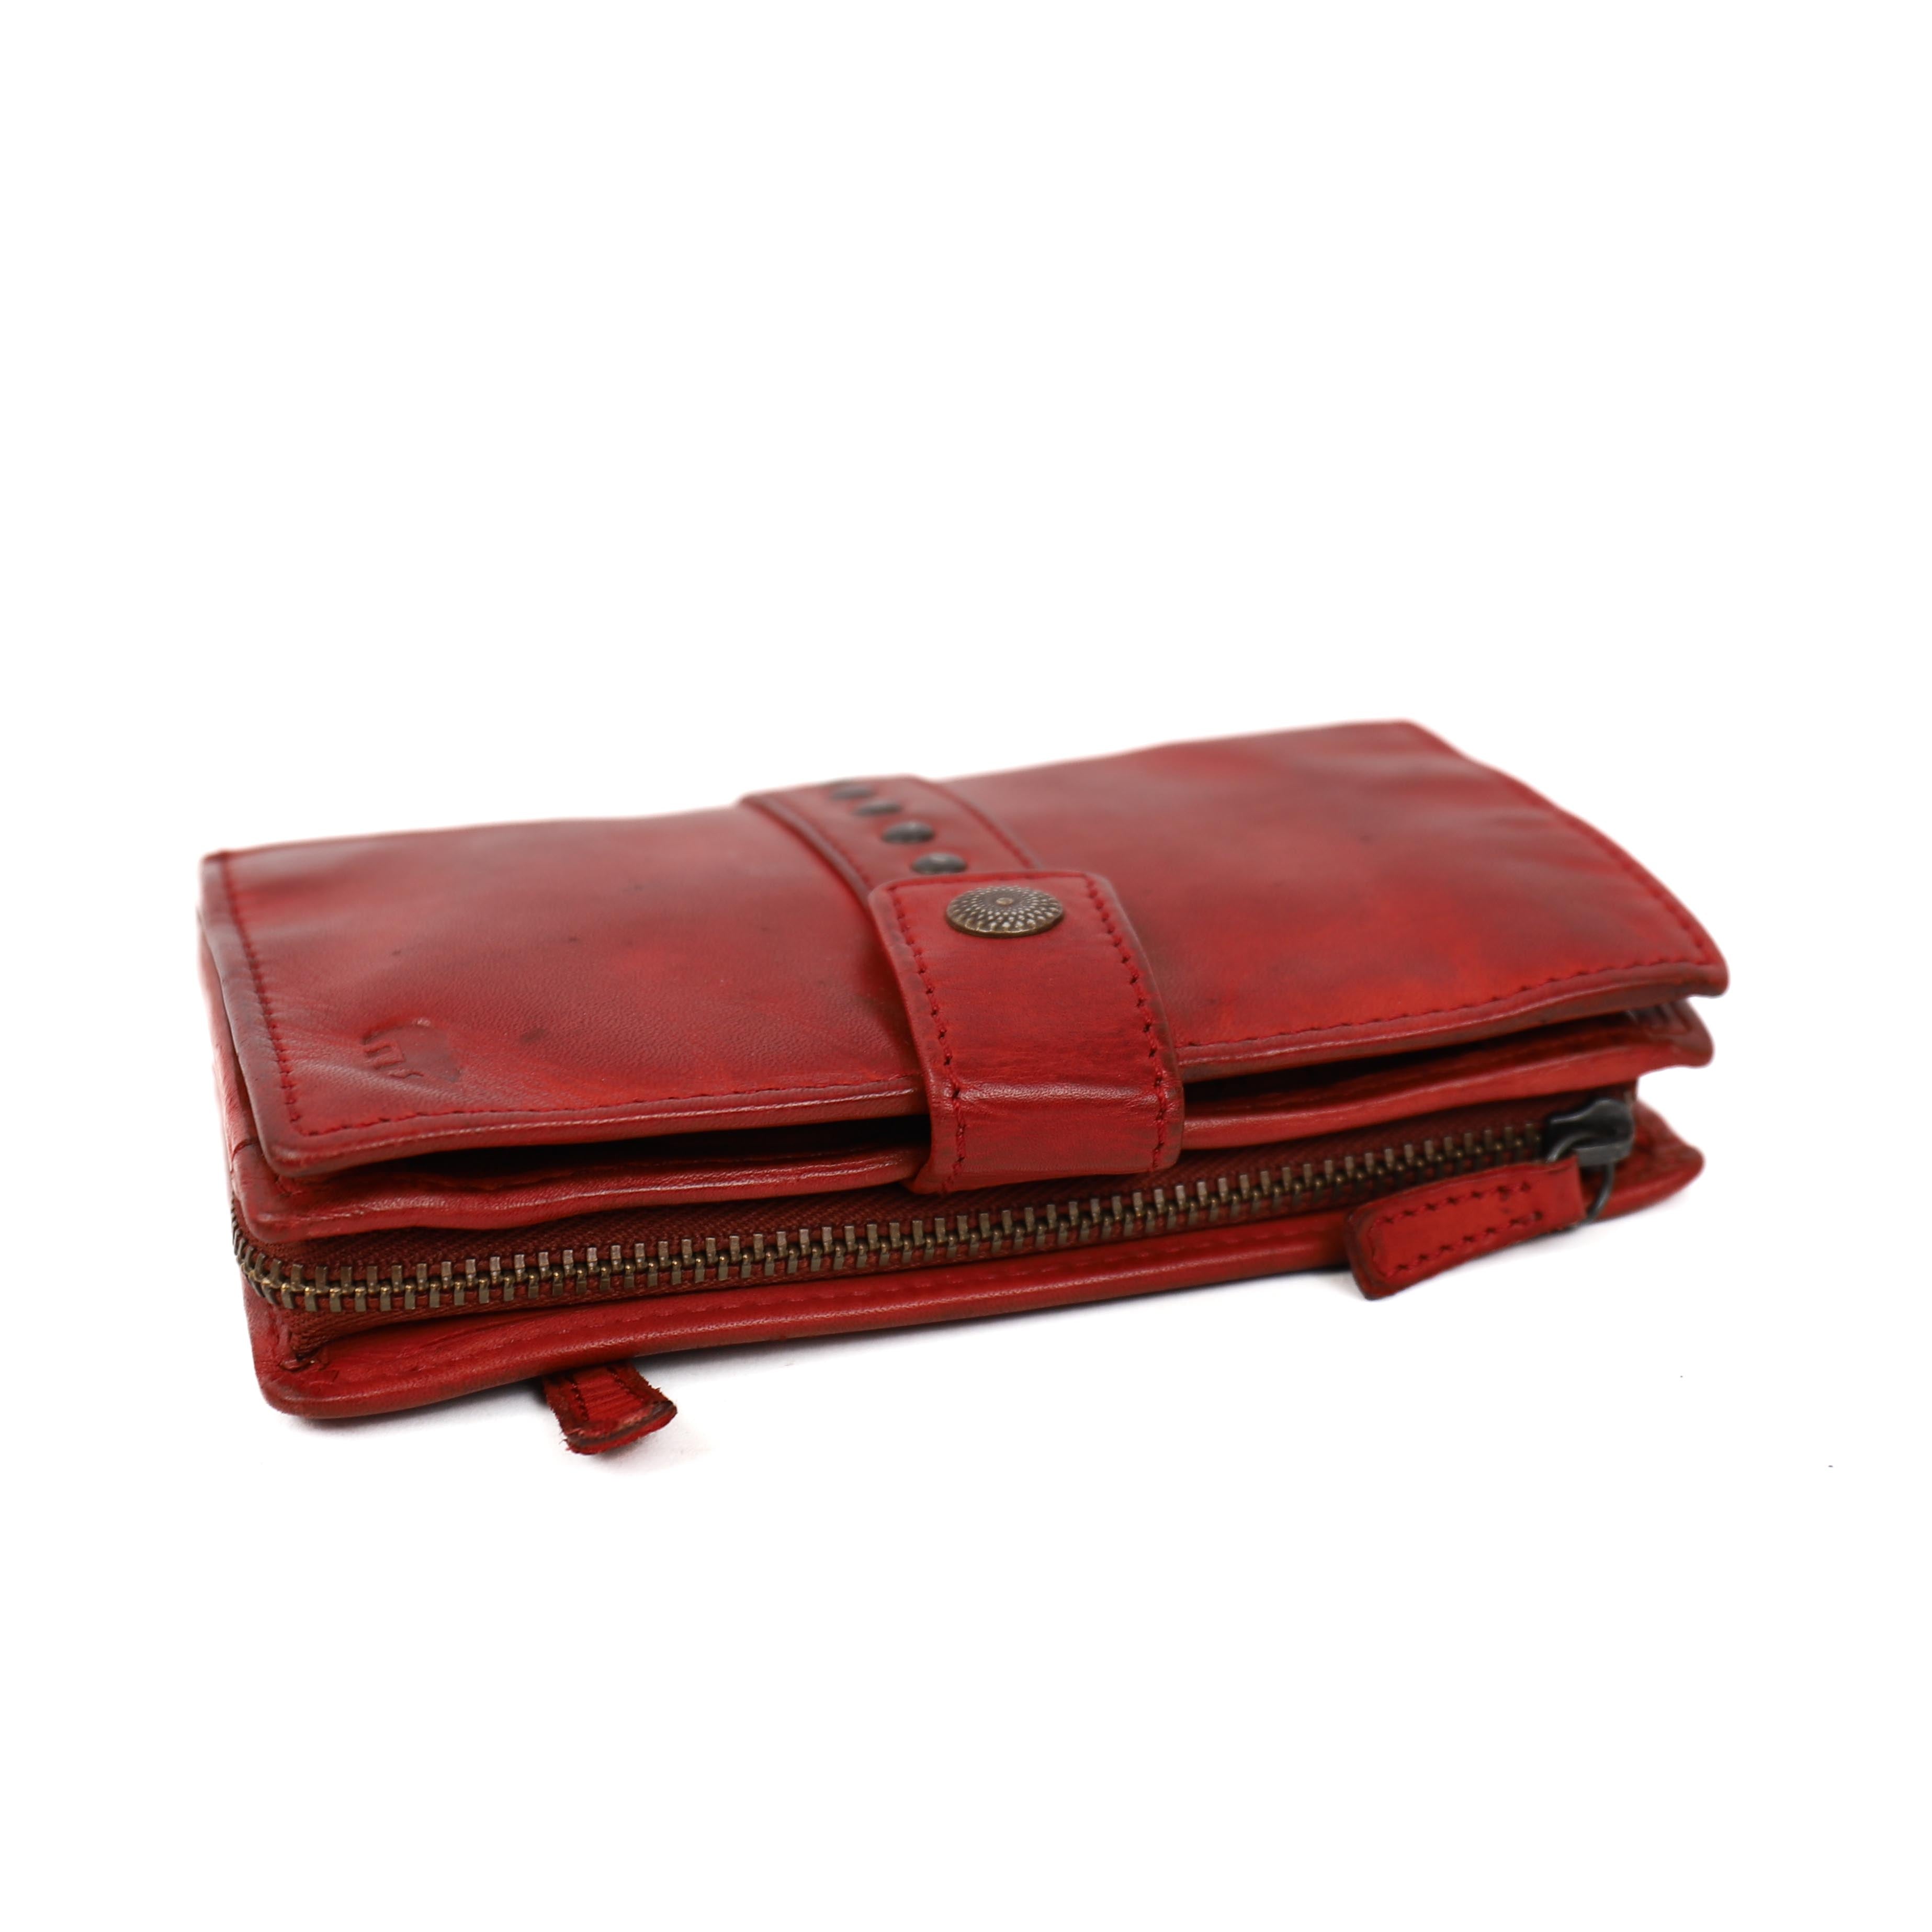 Portemonnee 'Sanne' rood studs - CL 15087